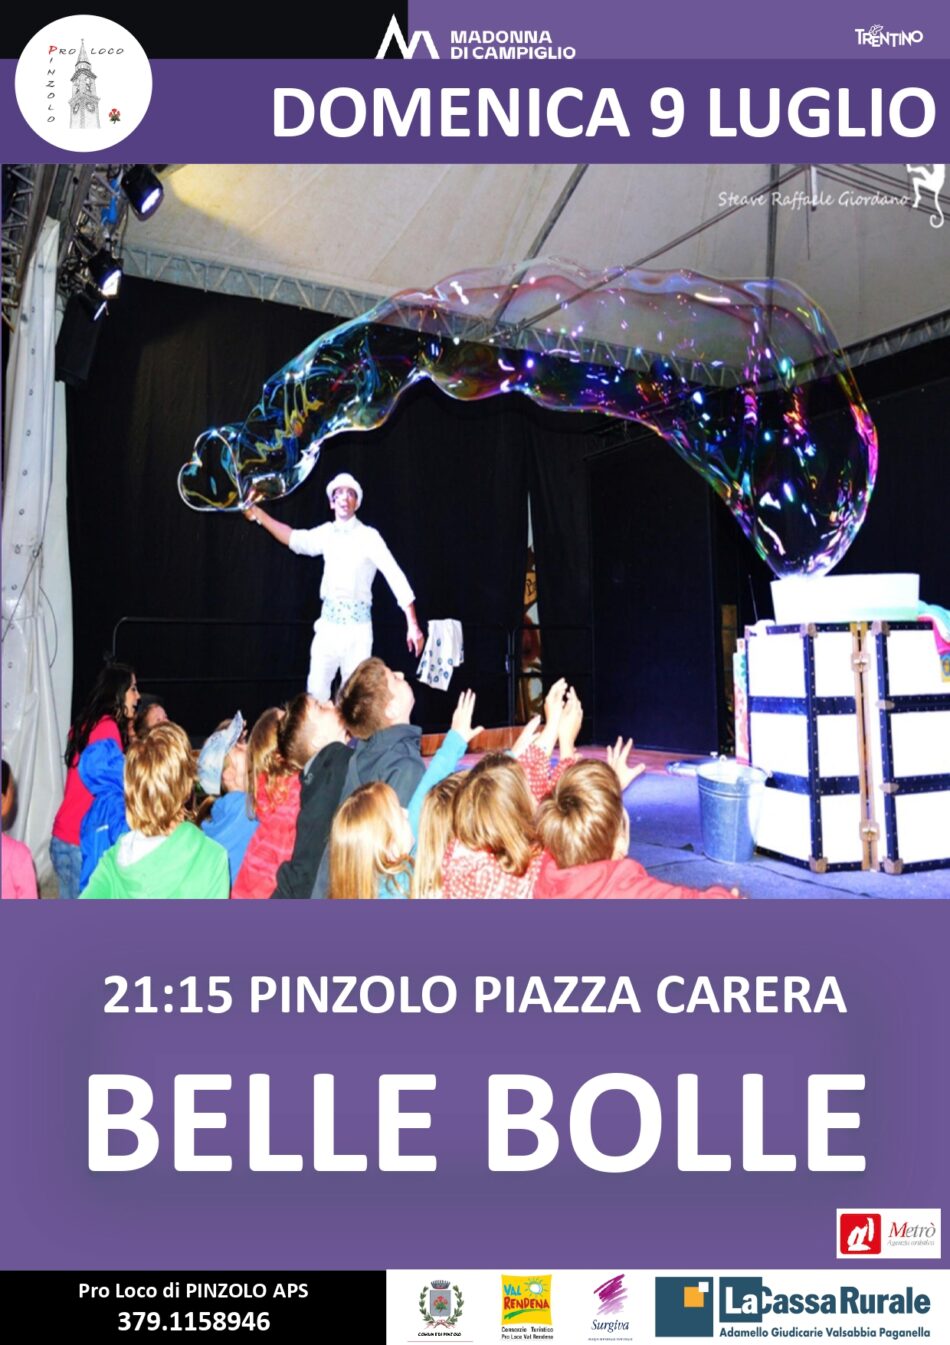 L’Estate è Pinzolo: Domenica 9 luglio ore 21.15 in piazza Carera Belle bolle